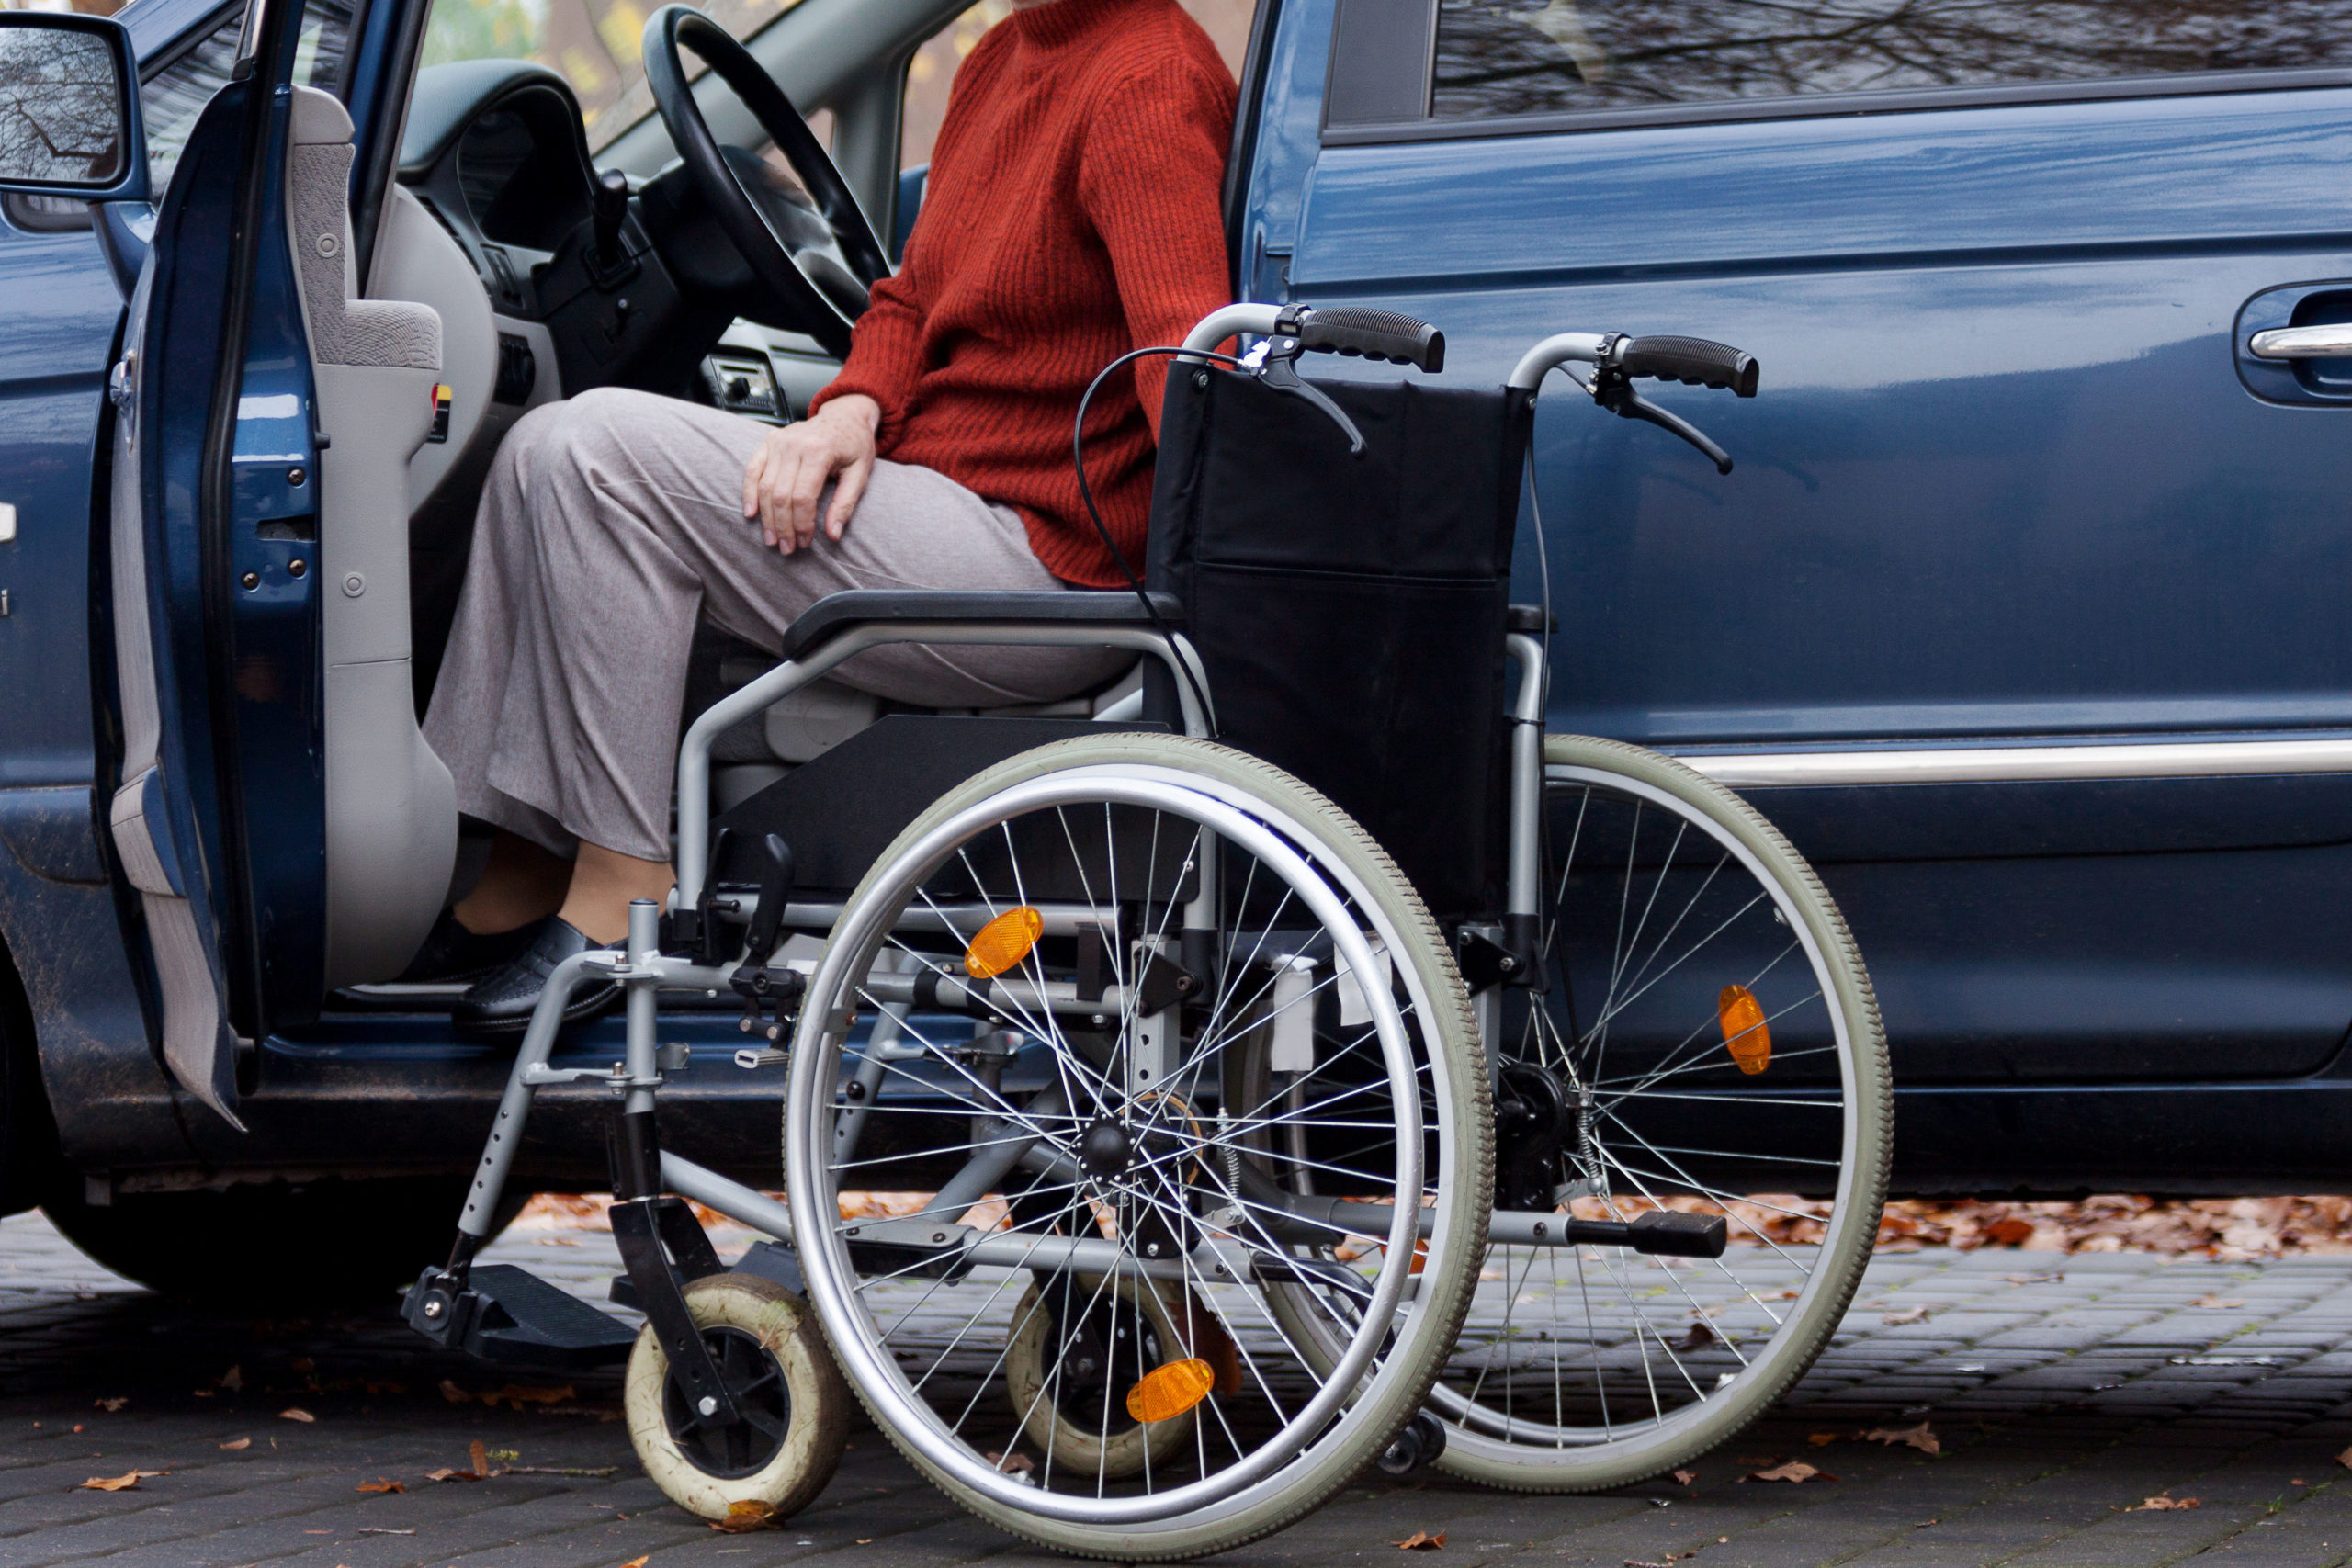 ไม่พิการ แต่จอดรถช่องคนพิการผิดไหม? เข้าใจสิทธิและการออกแบบที่จอดรถสำหรับทุก คน